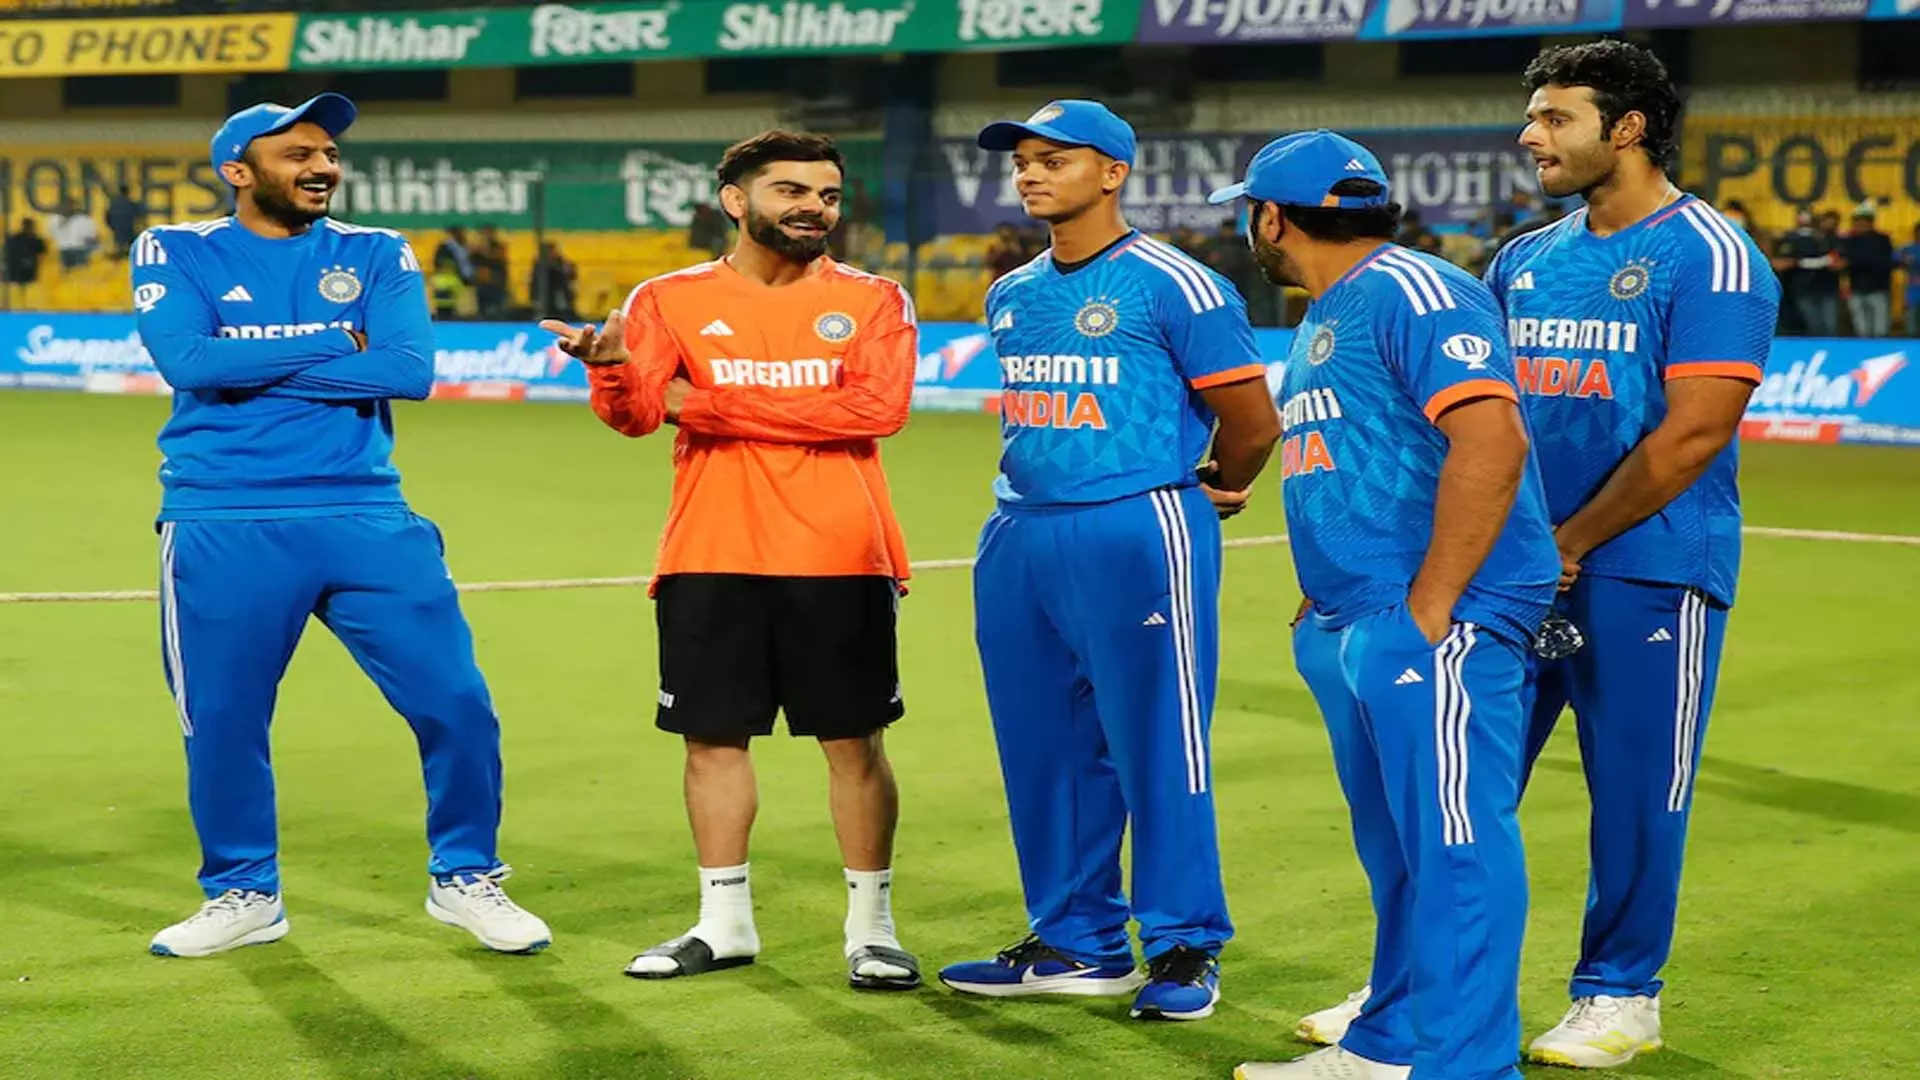 विराट कोहली, इंडिया ग्रेट चाहता है कि स्टार टी20 विश्व कप में बल्लेबाजी का स्थान त्यागें